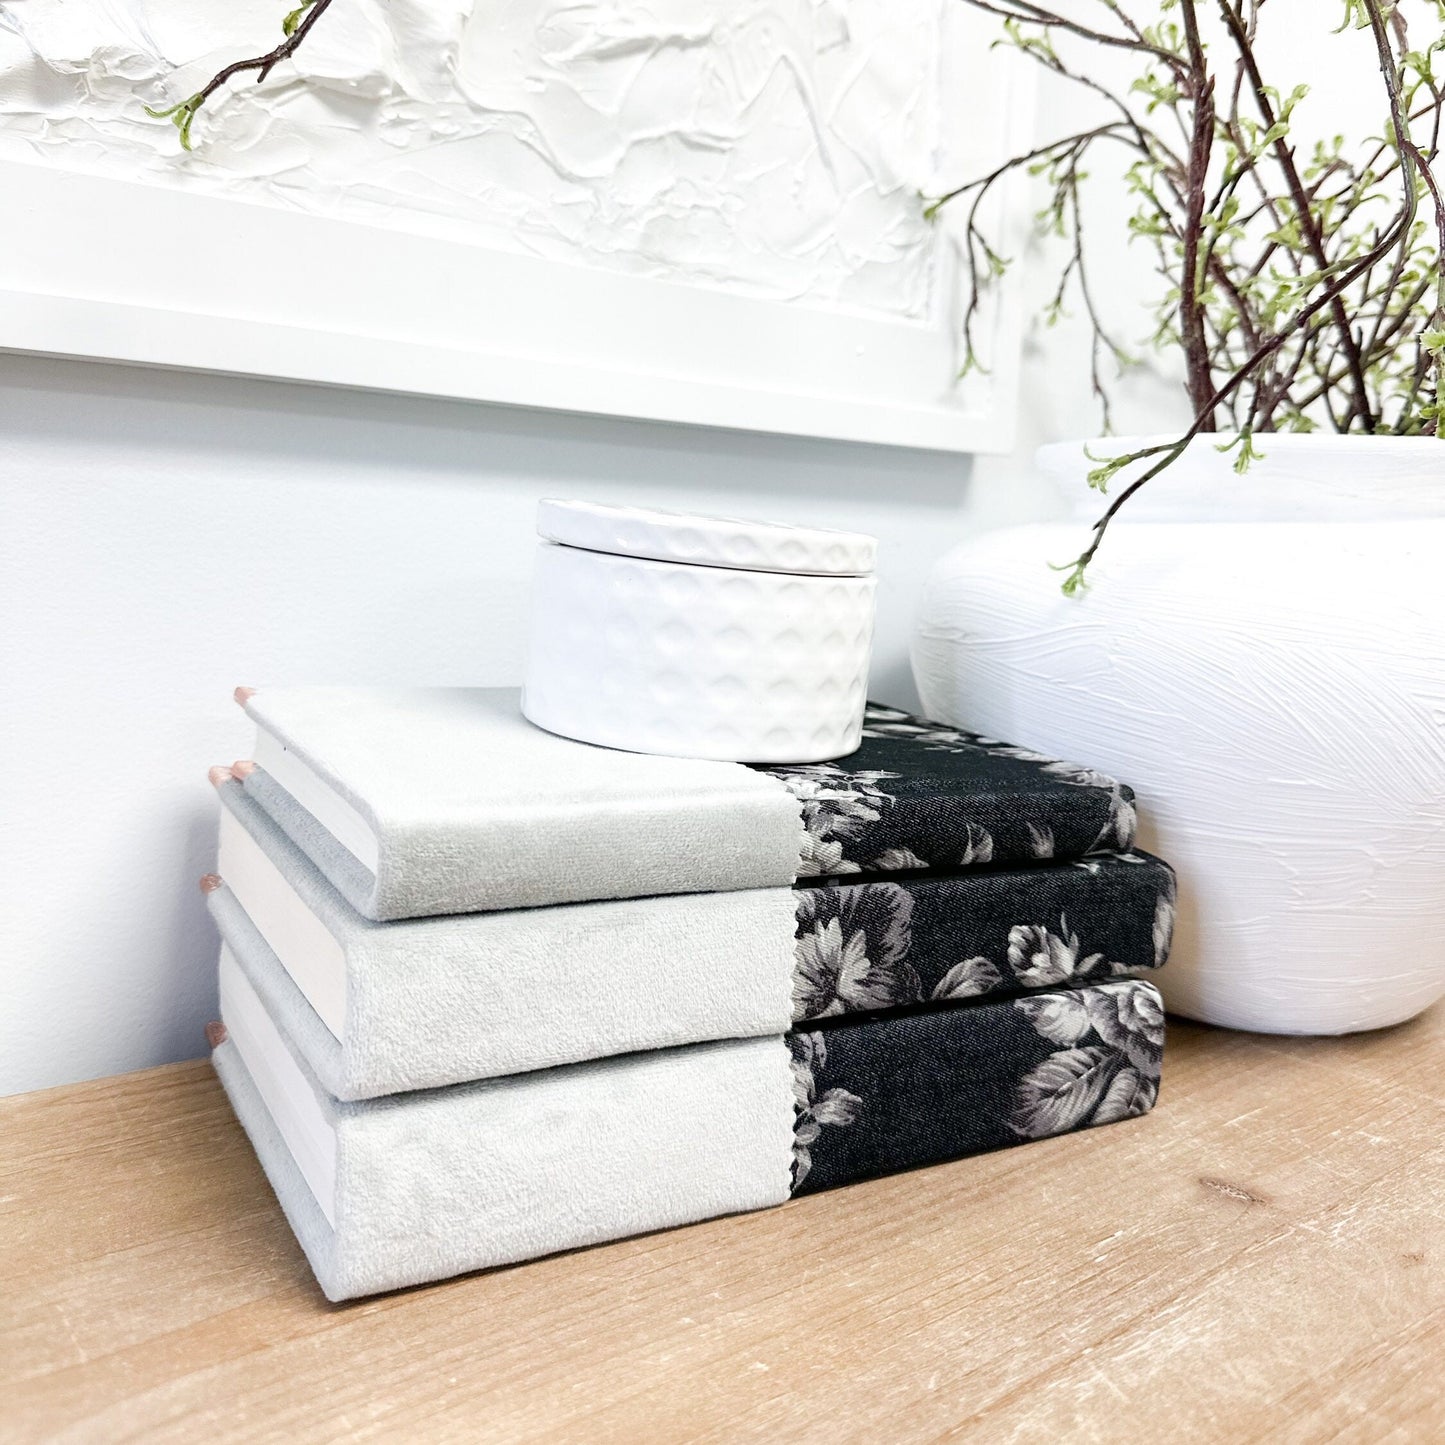 Linen Covered Books for Shelf Decor